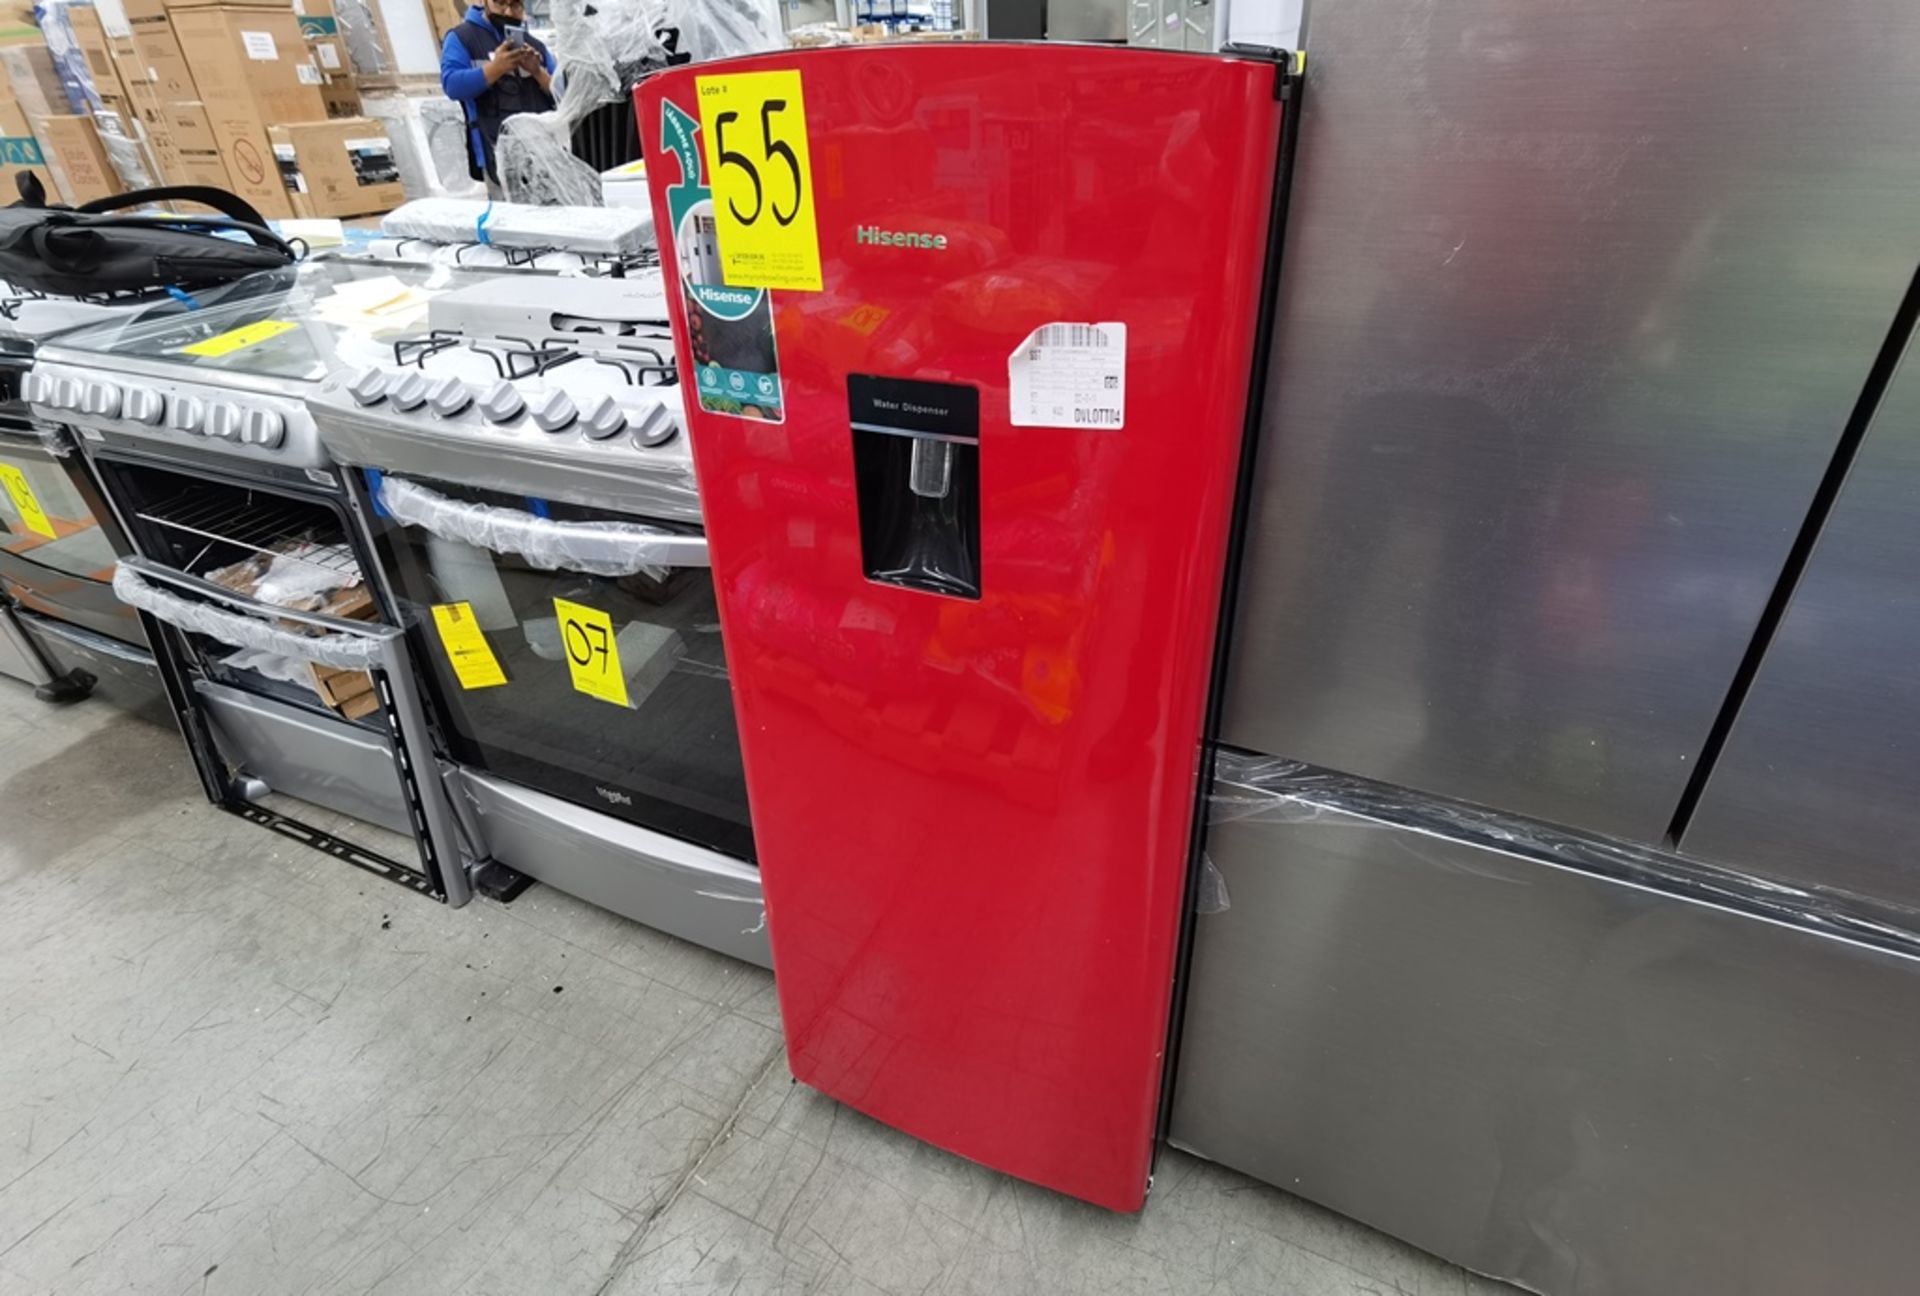 1 Refrigerador con Dispensador de Agua Marca Hisense, Modelo RR63D6WRX, Serie 0568, Color Rojo, Dañ - Image 2 of 9